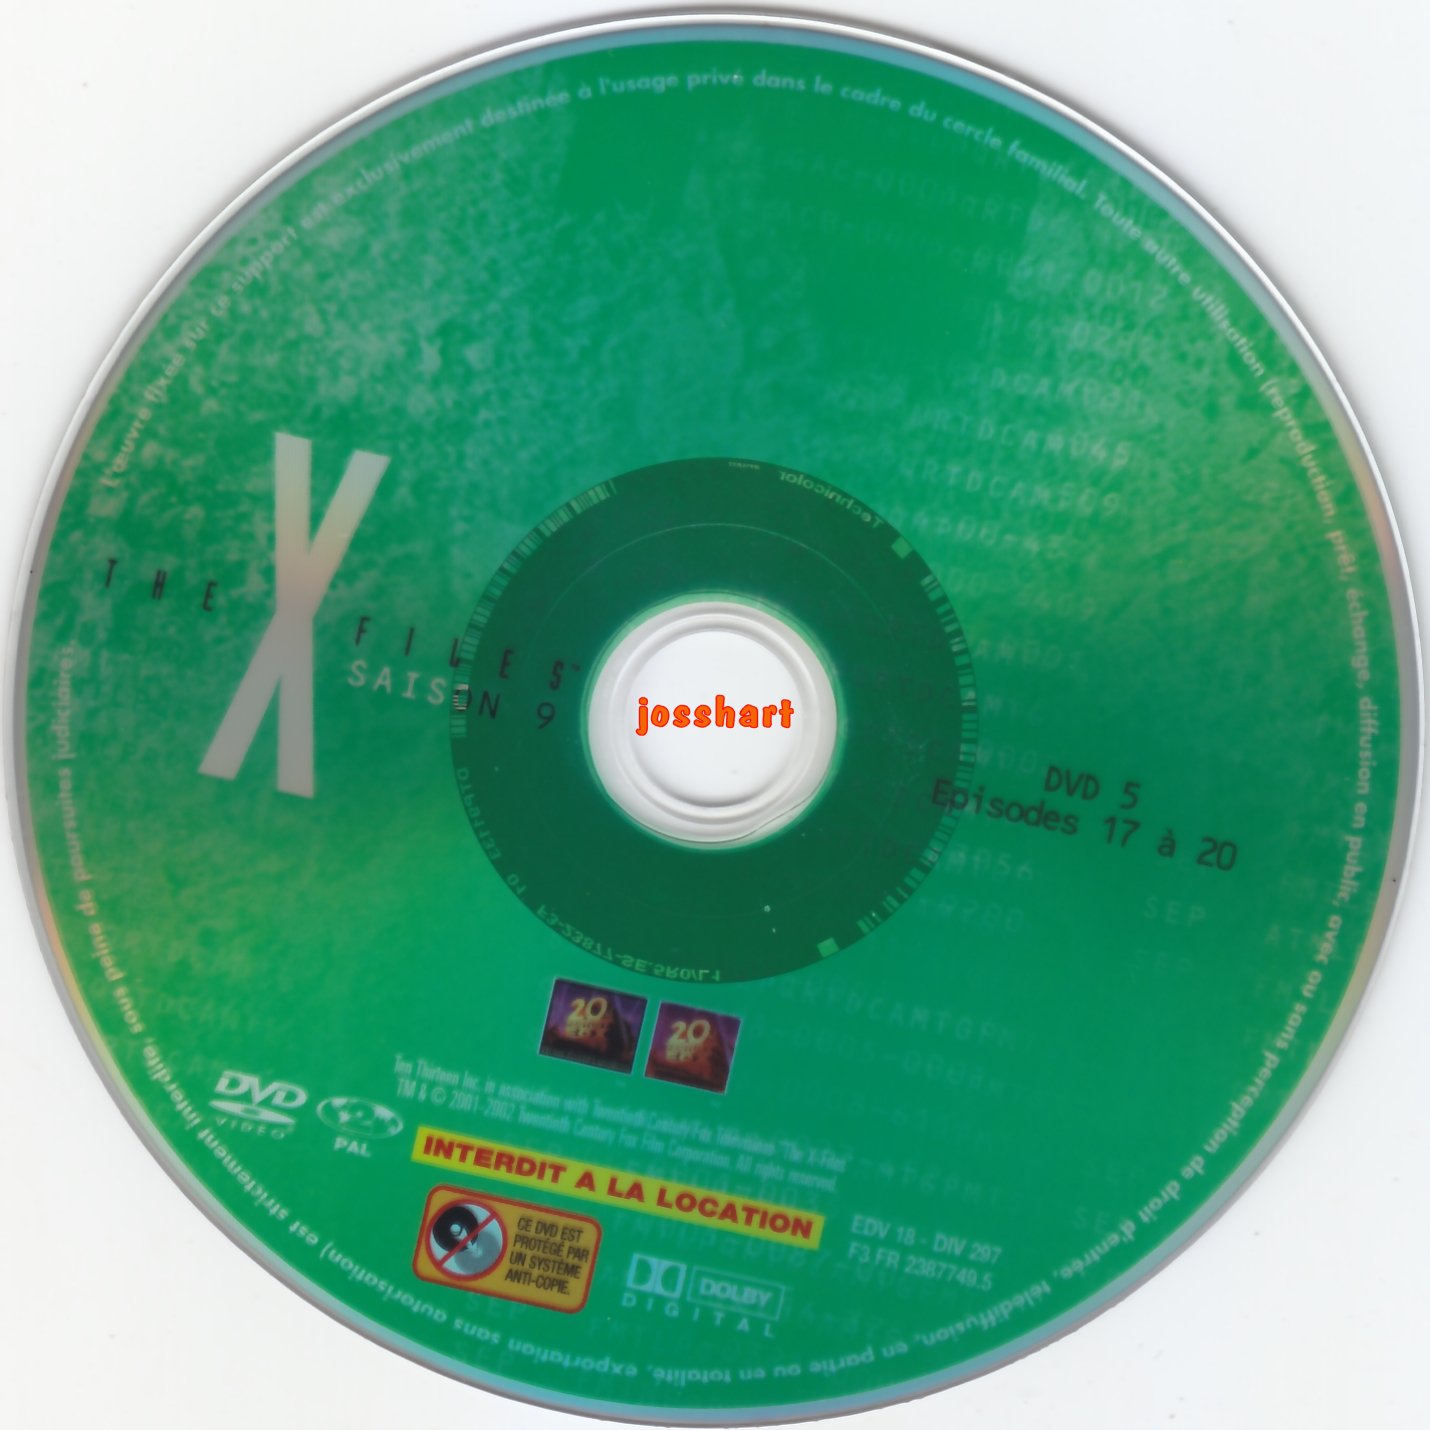 The X Files Saison 9 DVD 5 v2